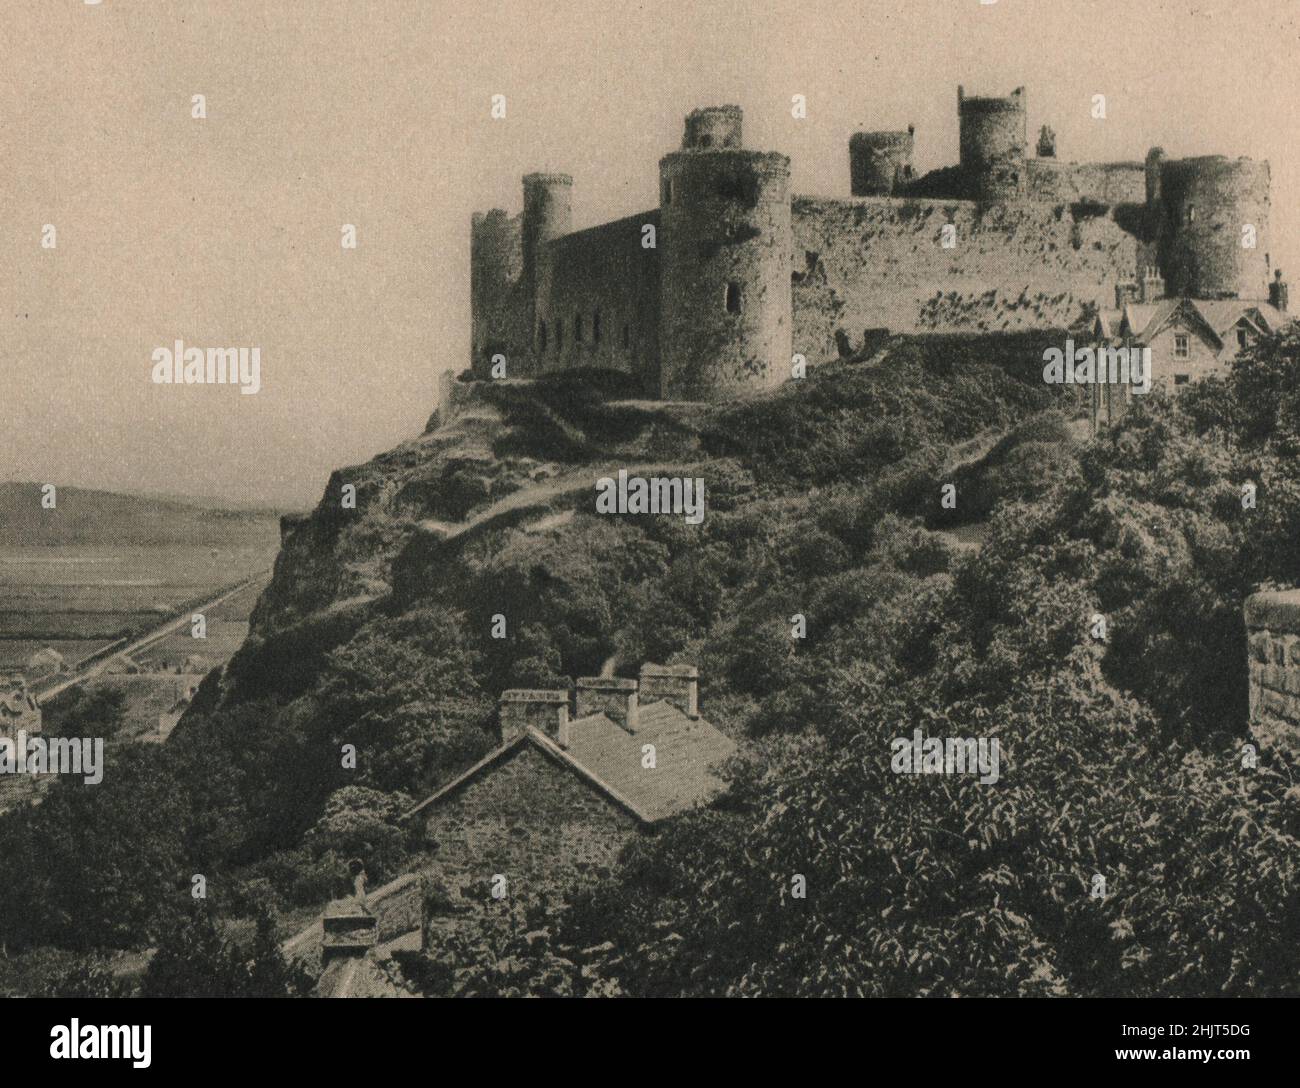 Es war Edward I., der an der Stelle einer römischen Festung das Schloss von Harlech in Merionethshire baute, das so berühmt war in altem walisischen Lied. Wales (1923) Stockfoto